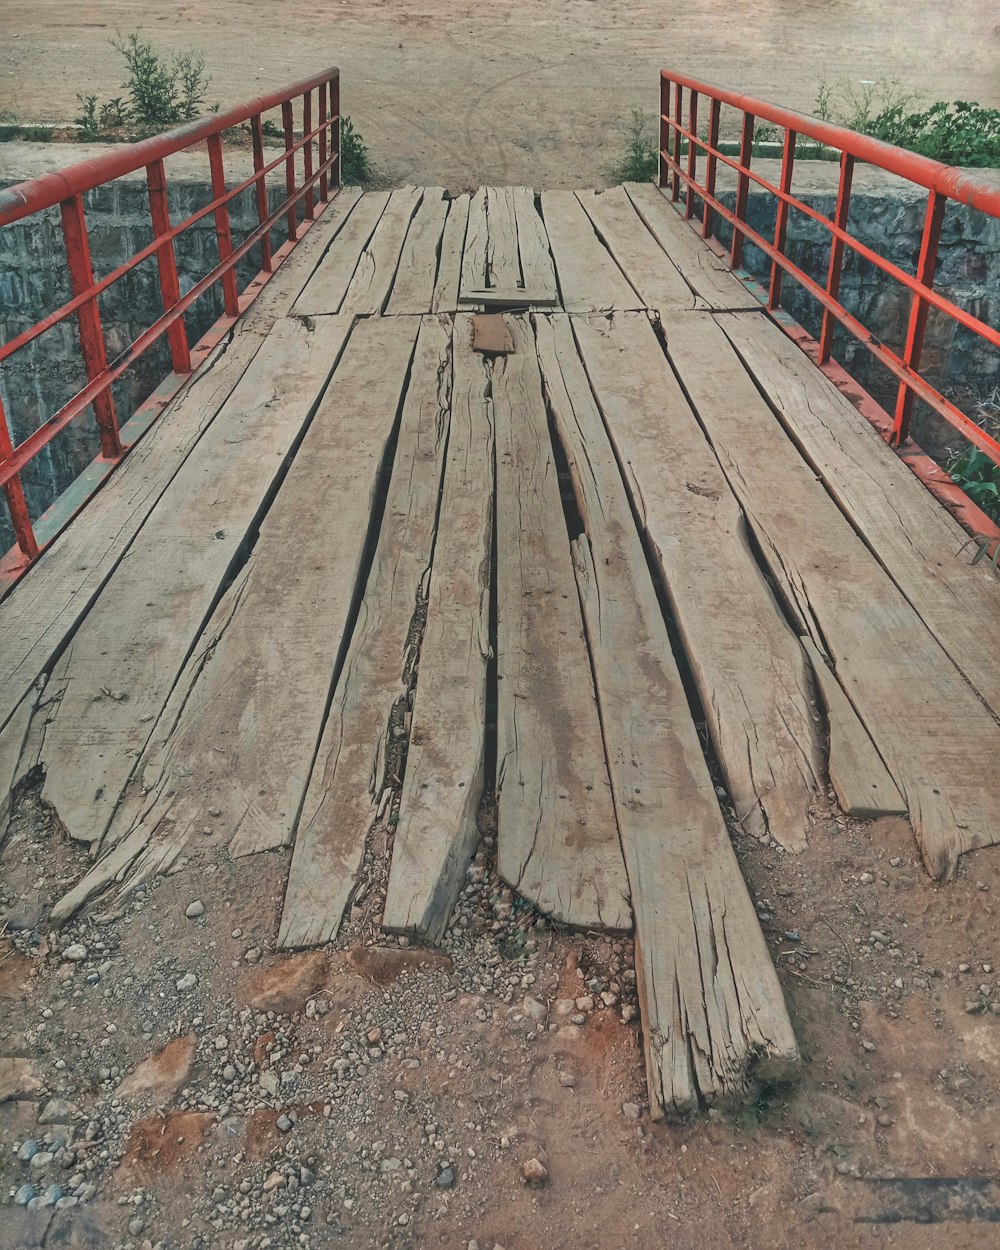 brown wooden bridge